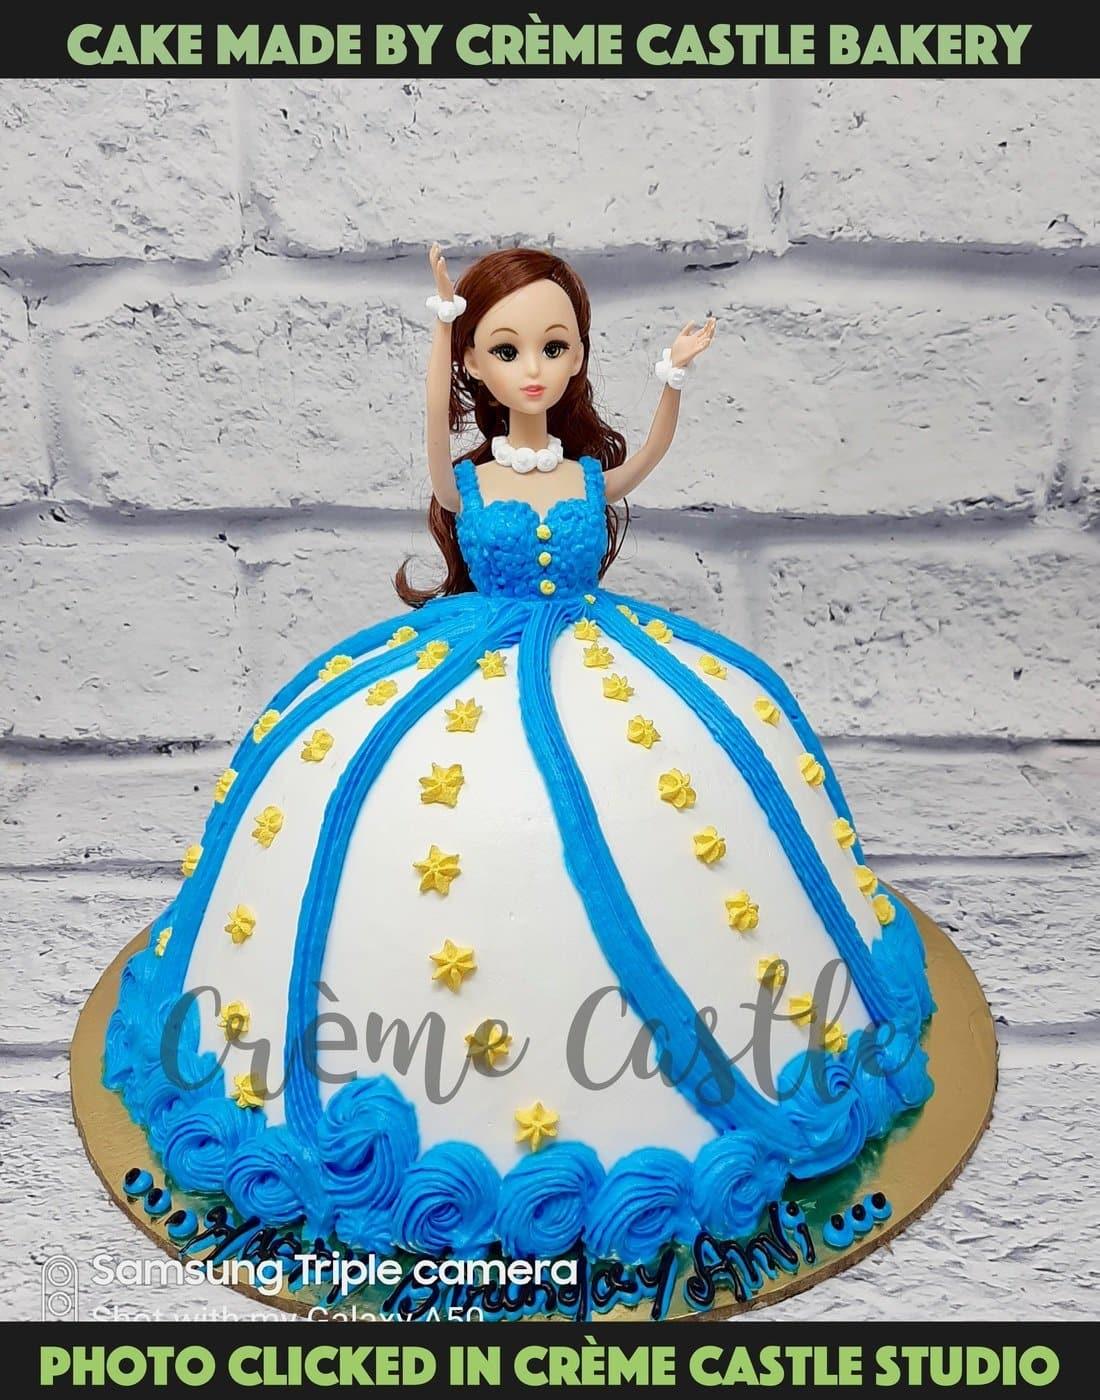 Barbie Nutcracker Princess Cake